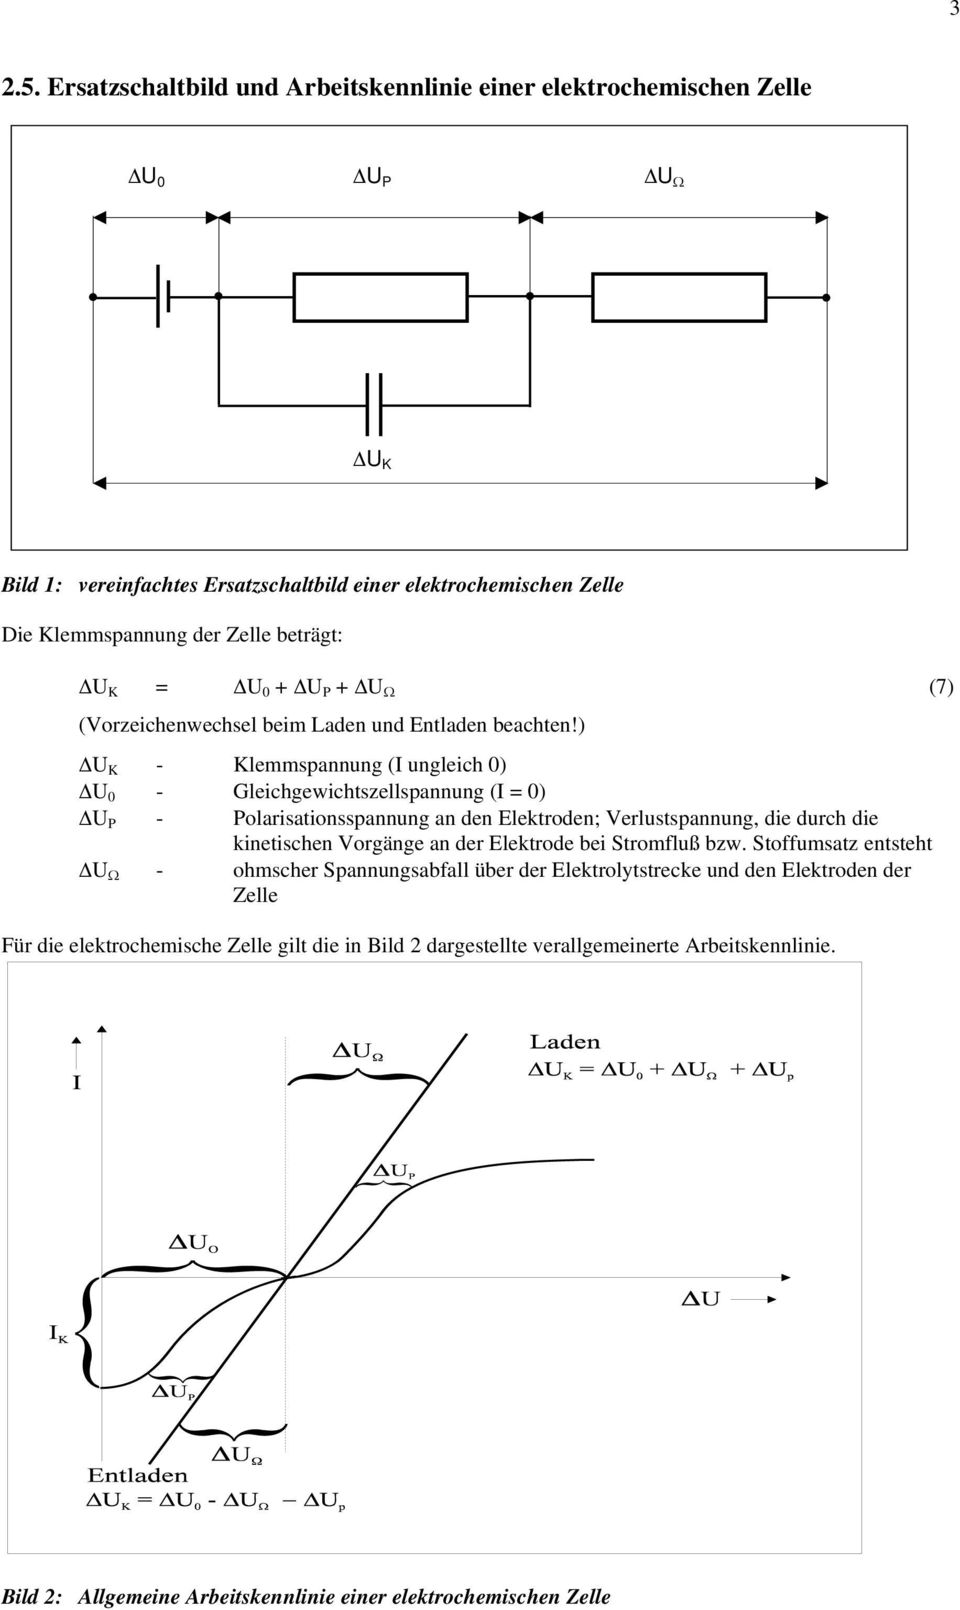 ) ΔU K Klemmspannung ( ungleich 0) ΔU 0 Gleichgewichtszellspannung ( 0) ΔU P Polarisationsspannung an den Elektroden; Verlustspannung, die durch die kinetischen Vorgänge an der